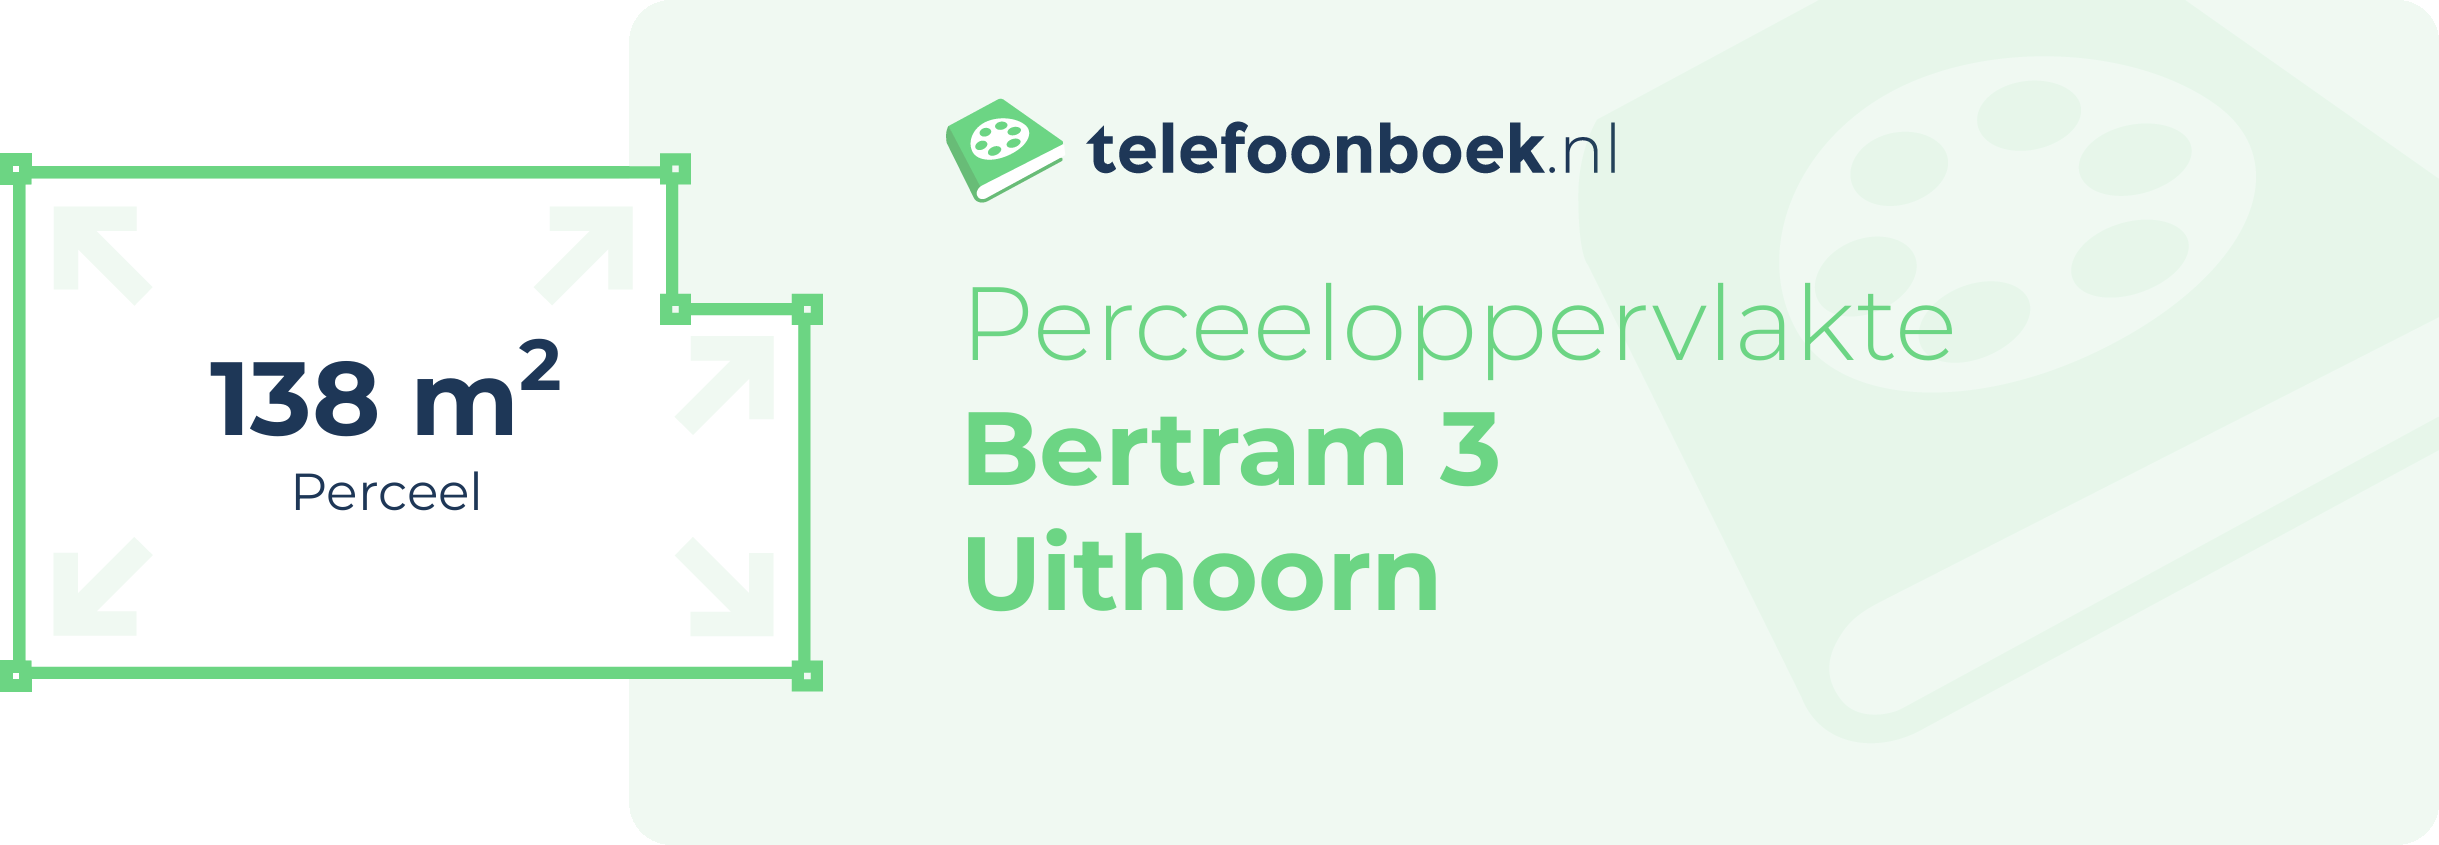 Perceeloppervlakte Bertram 3 Uithoorn